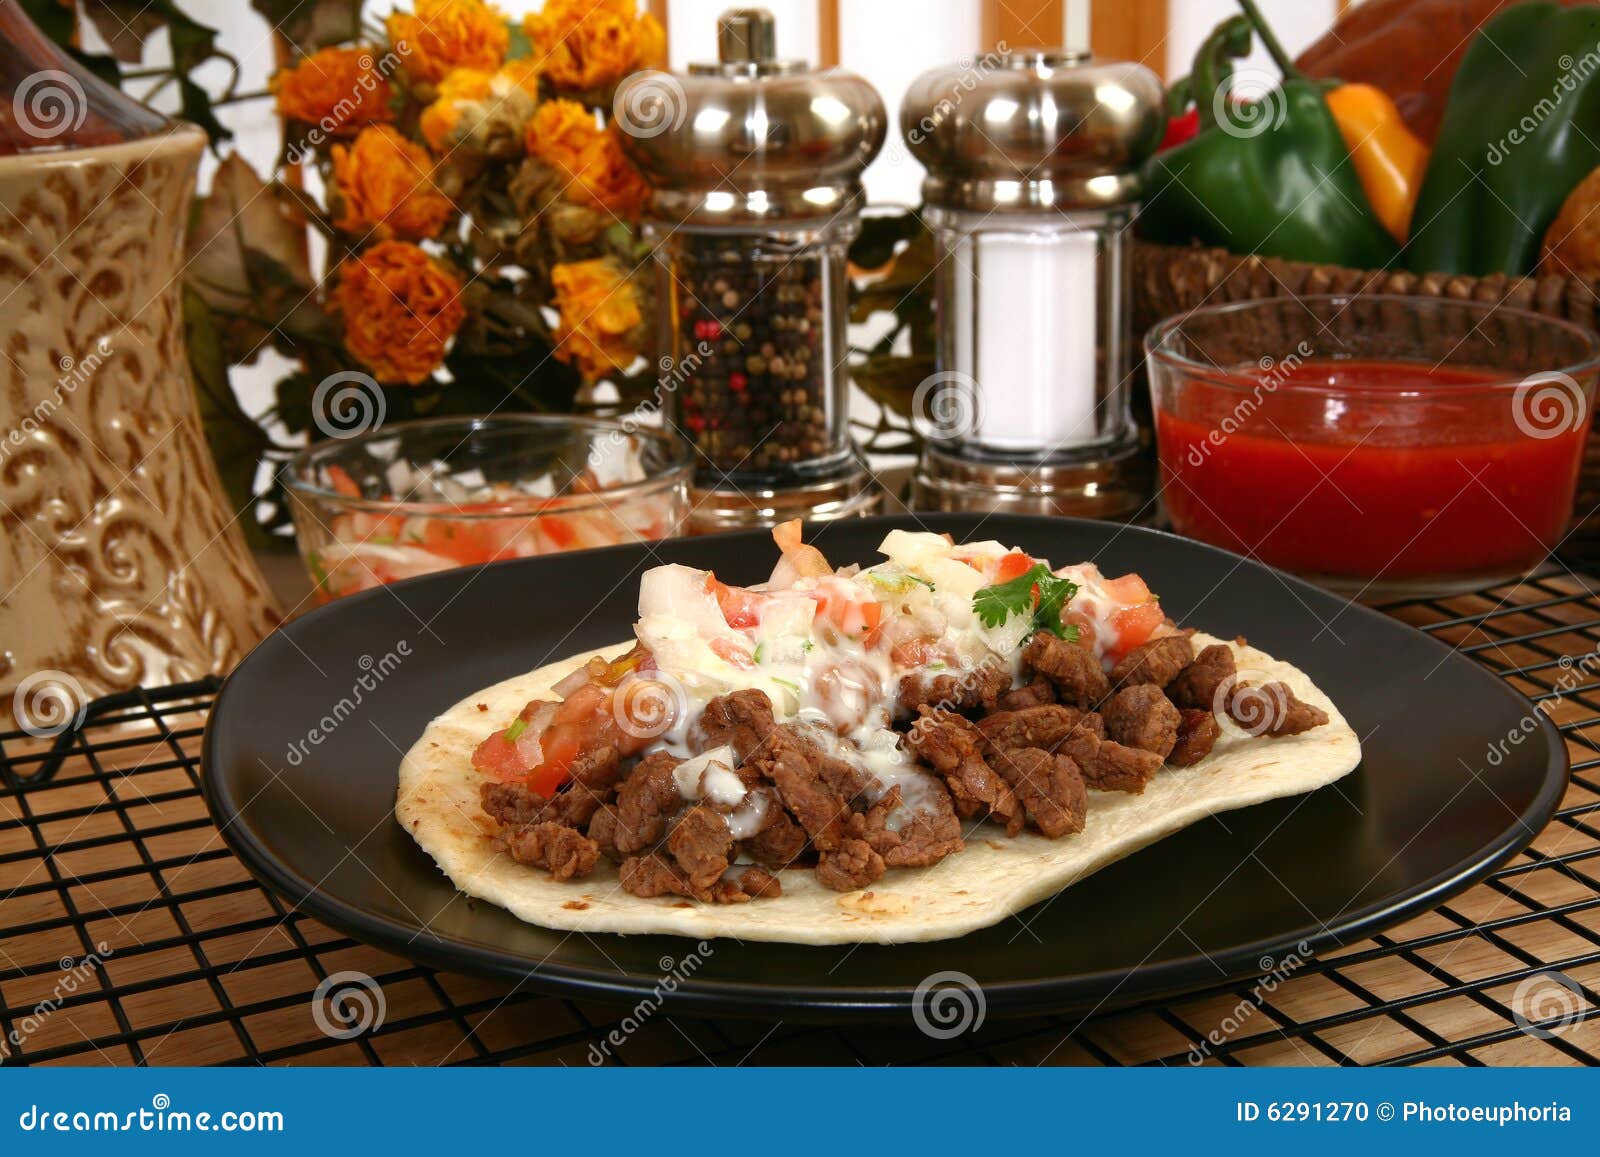 tacos carne asada